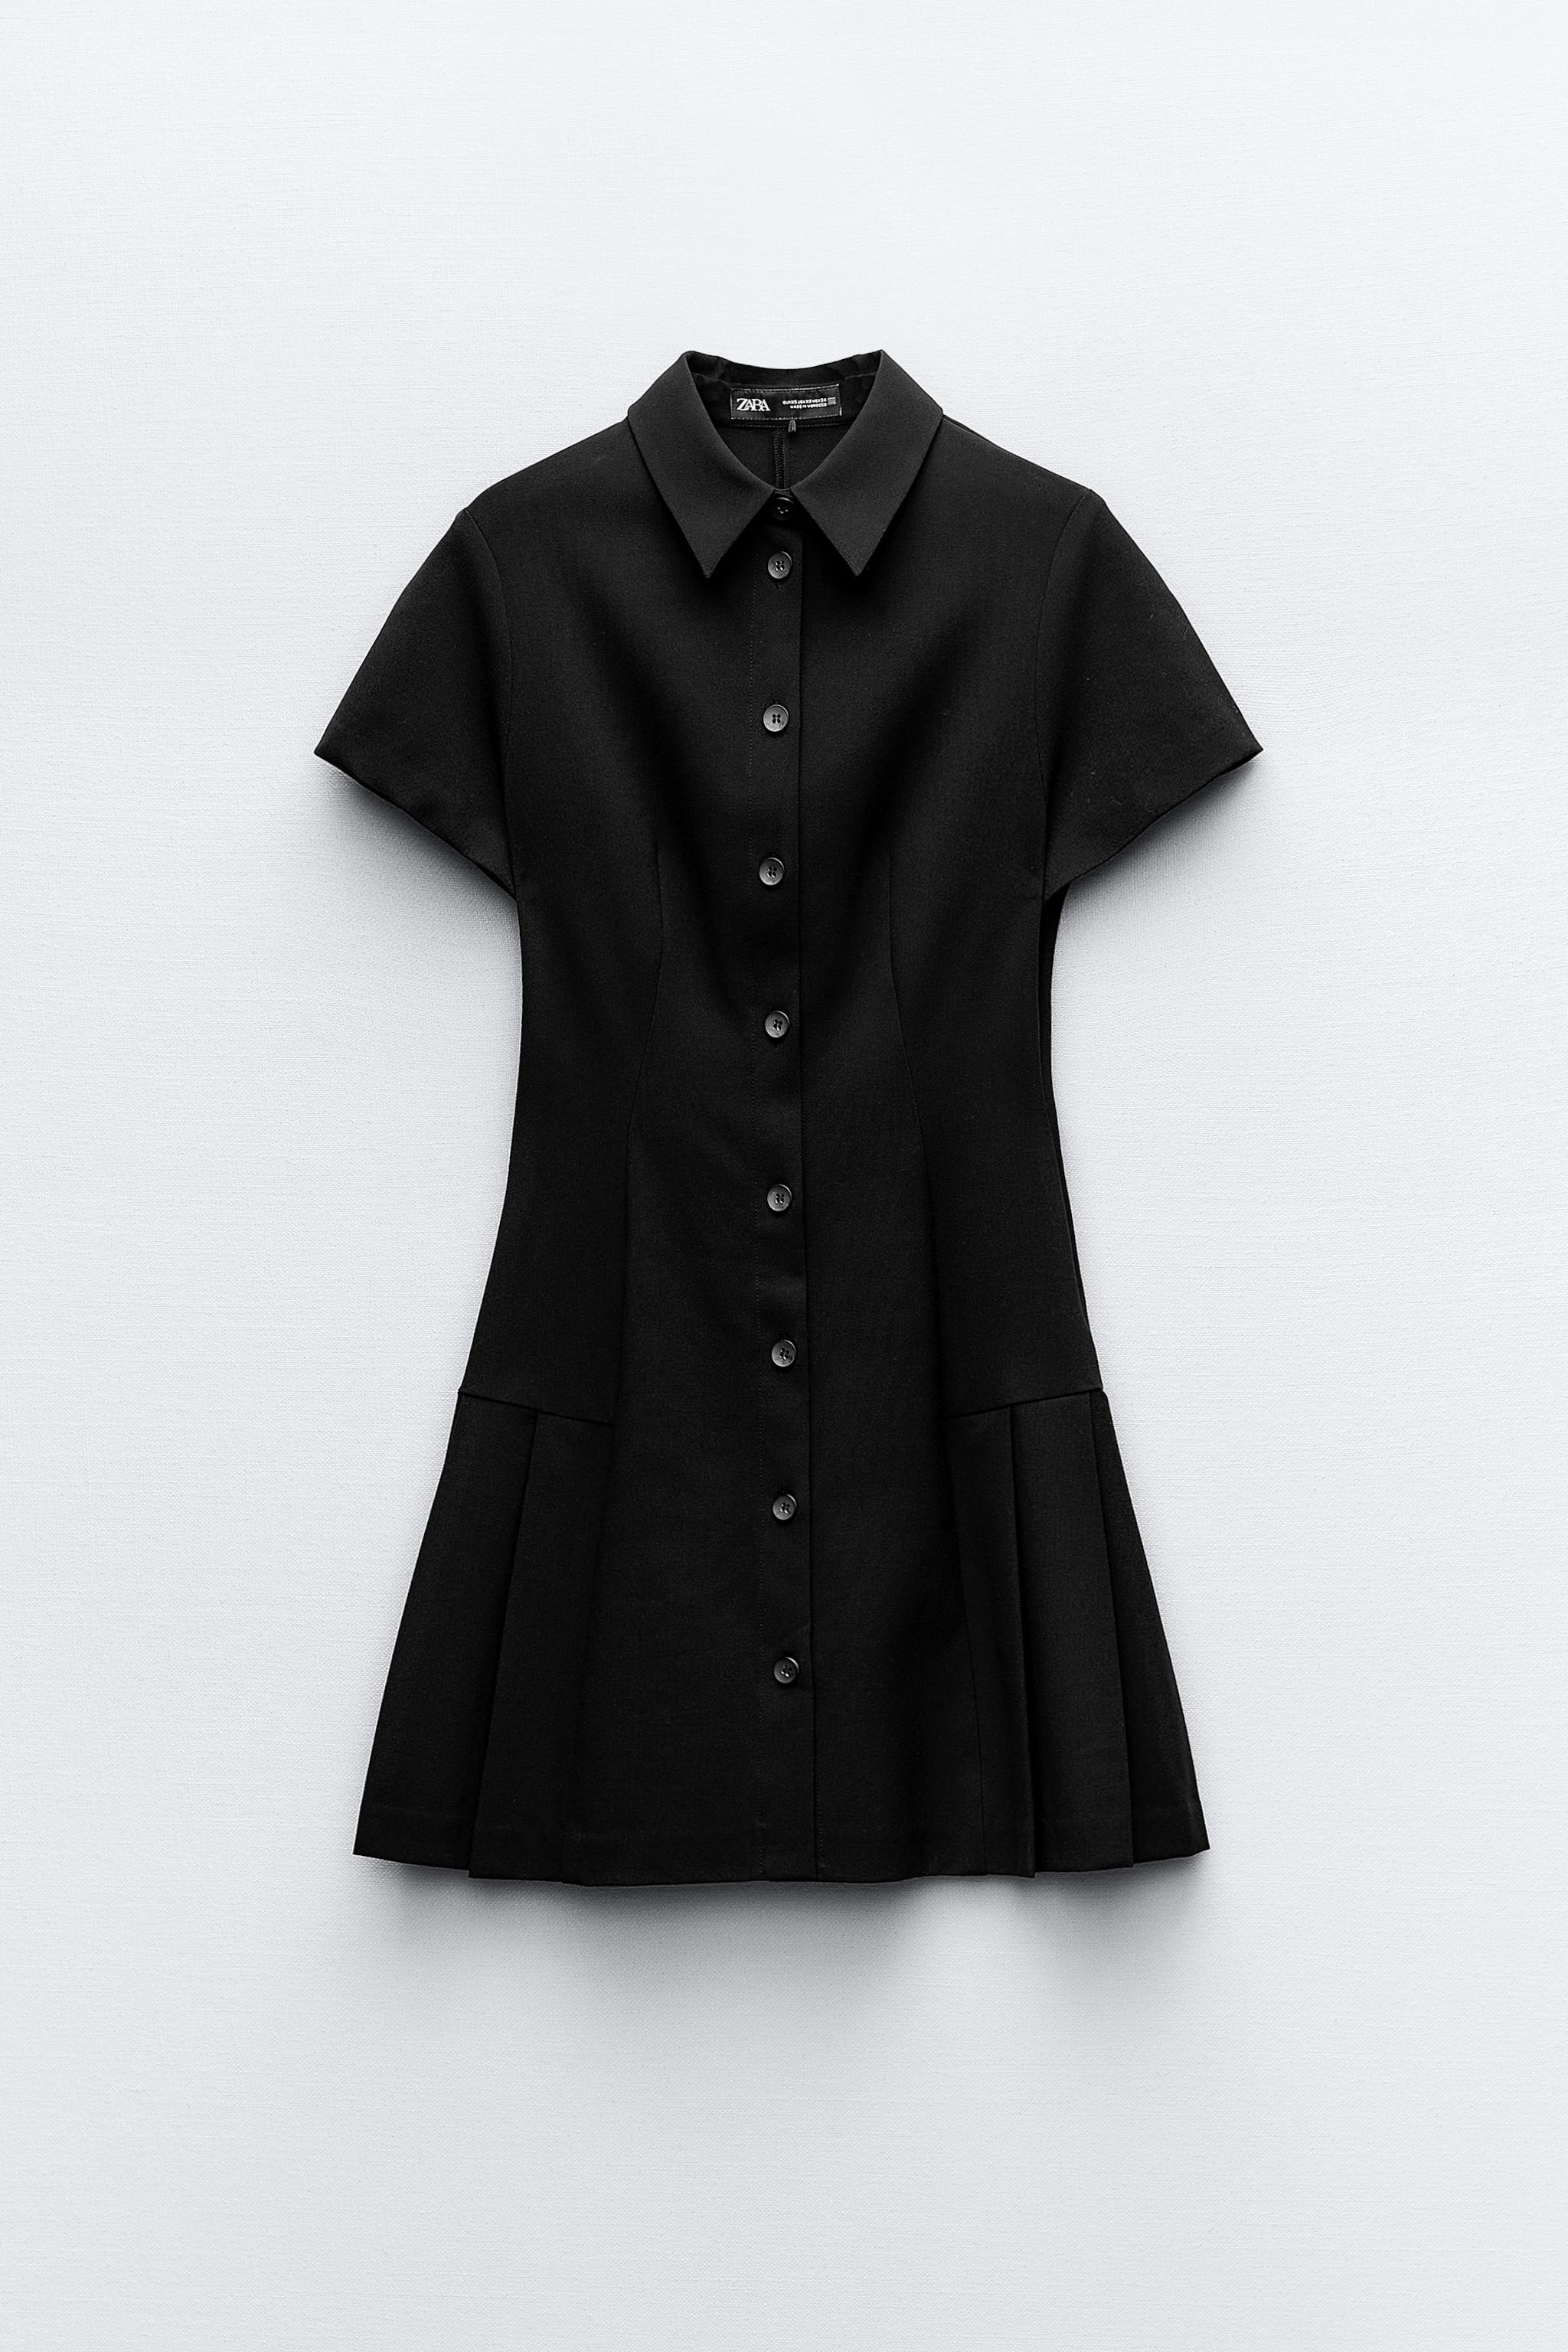 MINI SHIRT DRESS - Black | ZARA United States